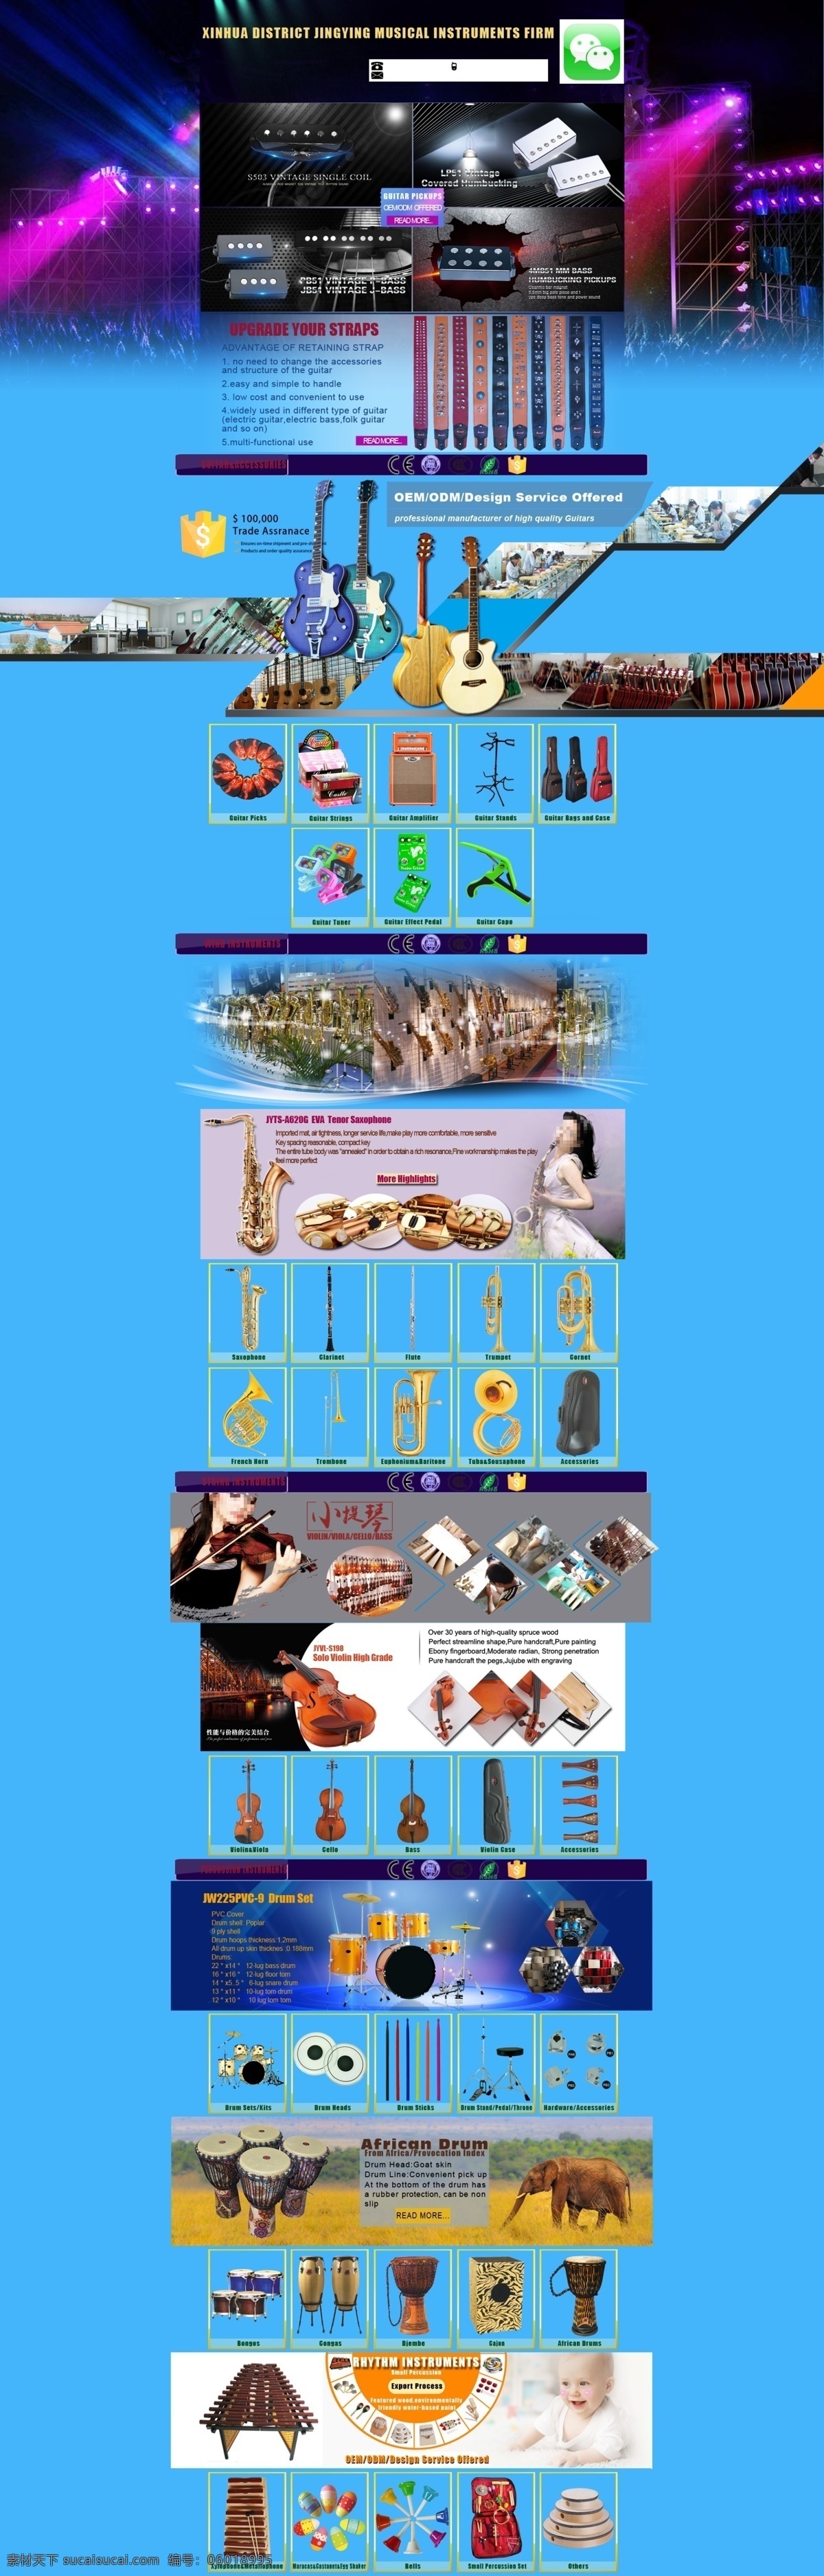 阿里巴巴 国际 站 乐器 行业 模板 乐器行业模板 海报 店招 吉他 提琴 管乐 萨克斯 小号 大号 太阳号 架子鼓 拉丁鼓 非洲鼓 小打 吉他配件